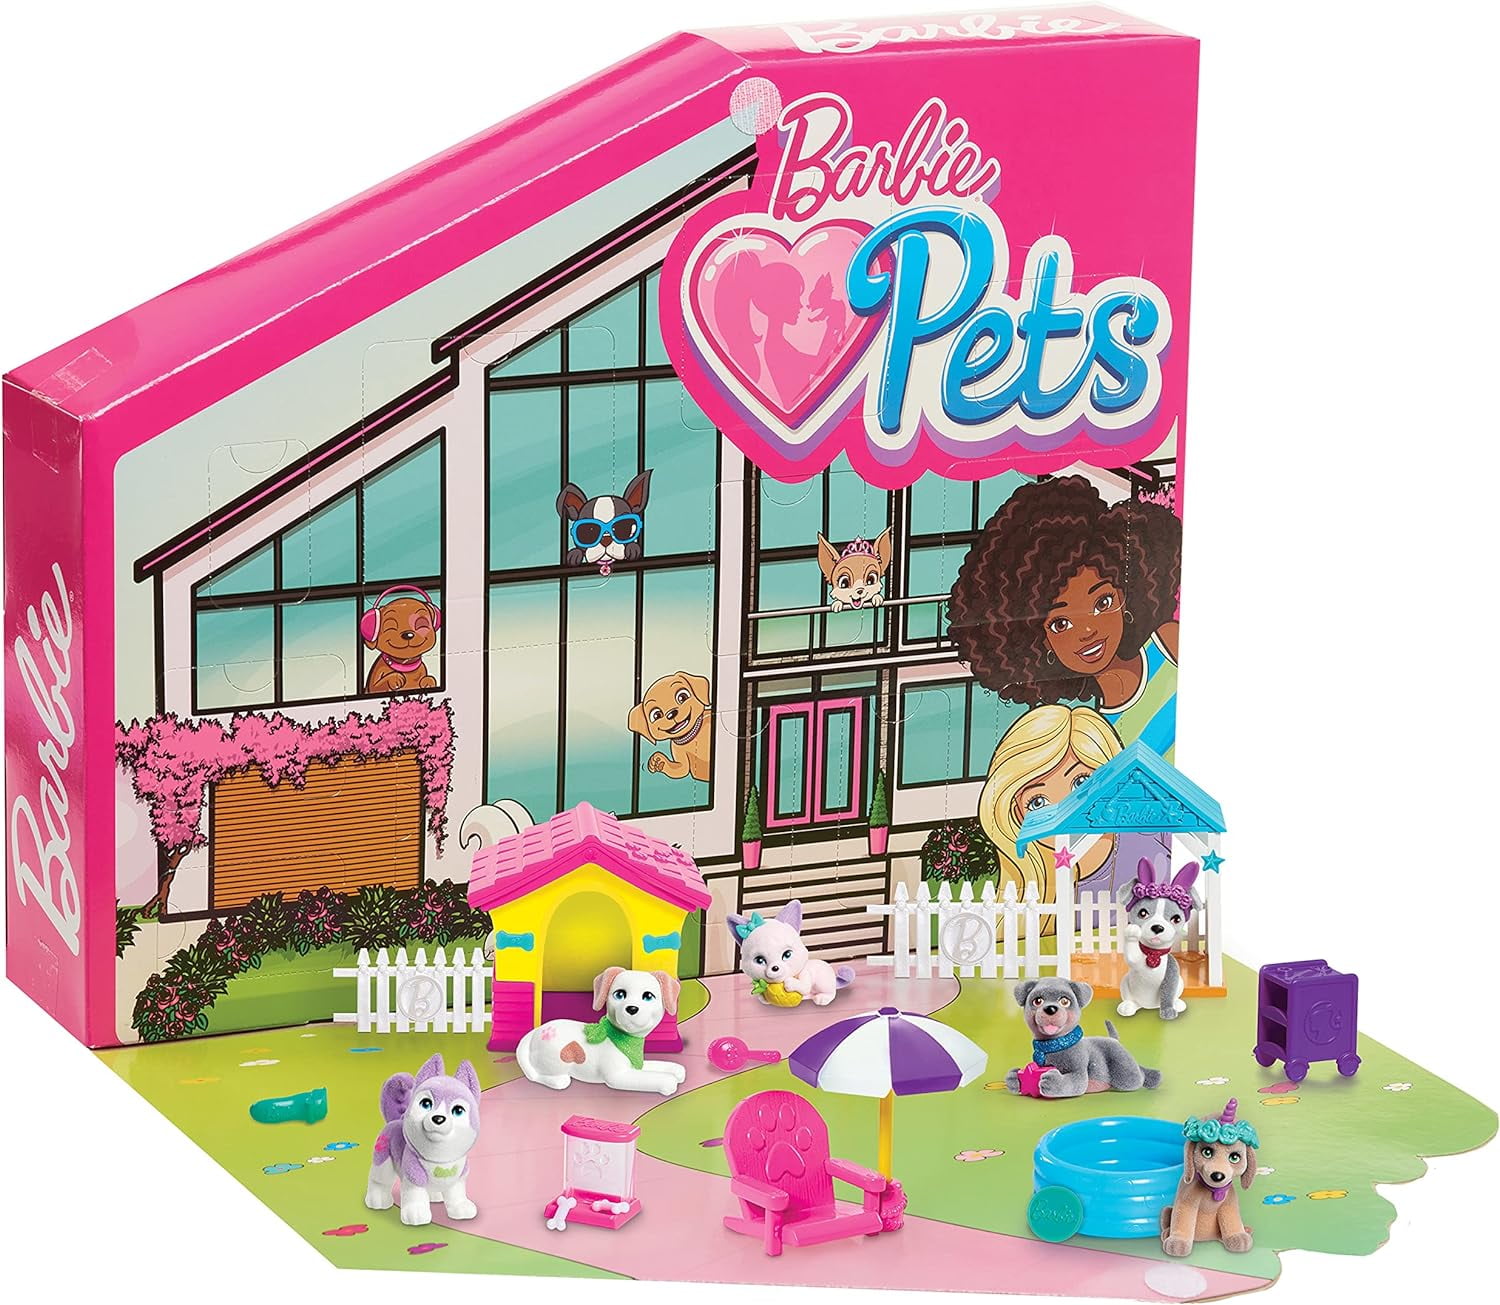 Barbie Pets Dreamhouse Pet Surprise Playset, Includes 6 Pets, Two